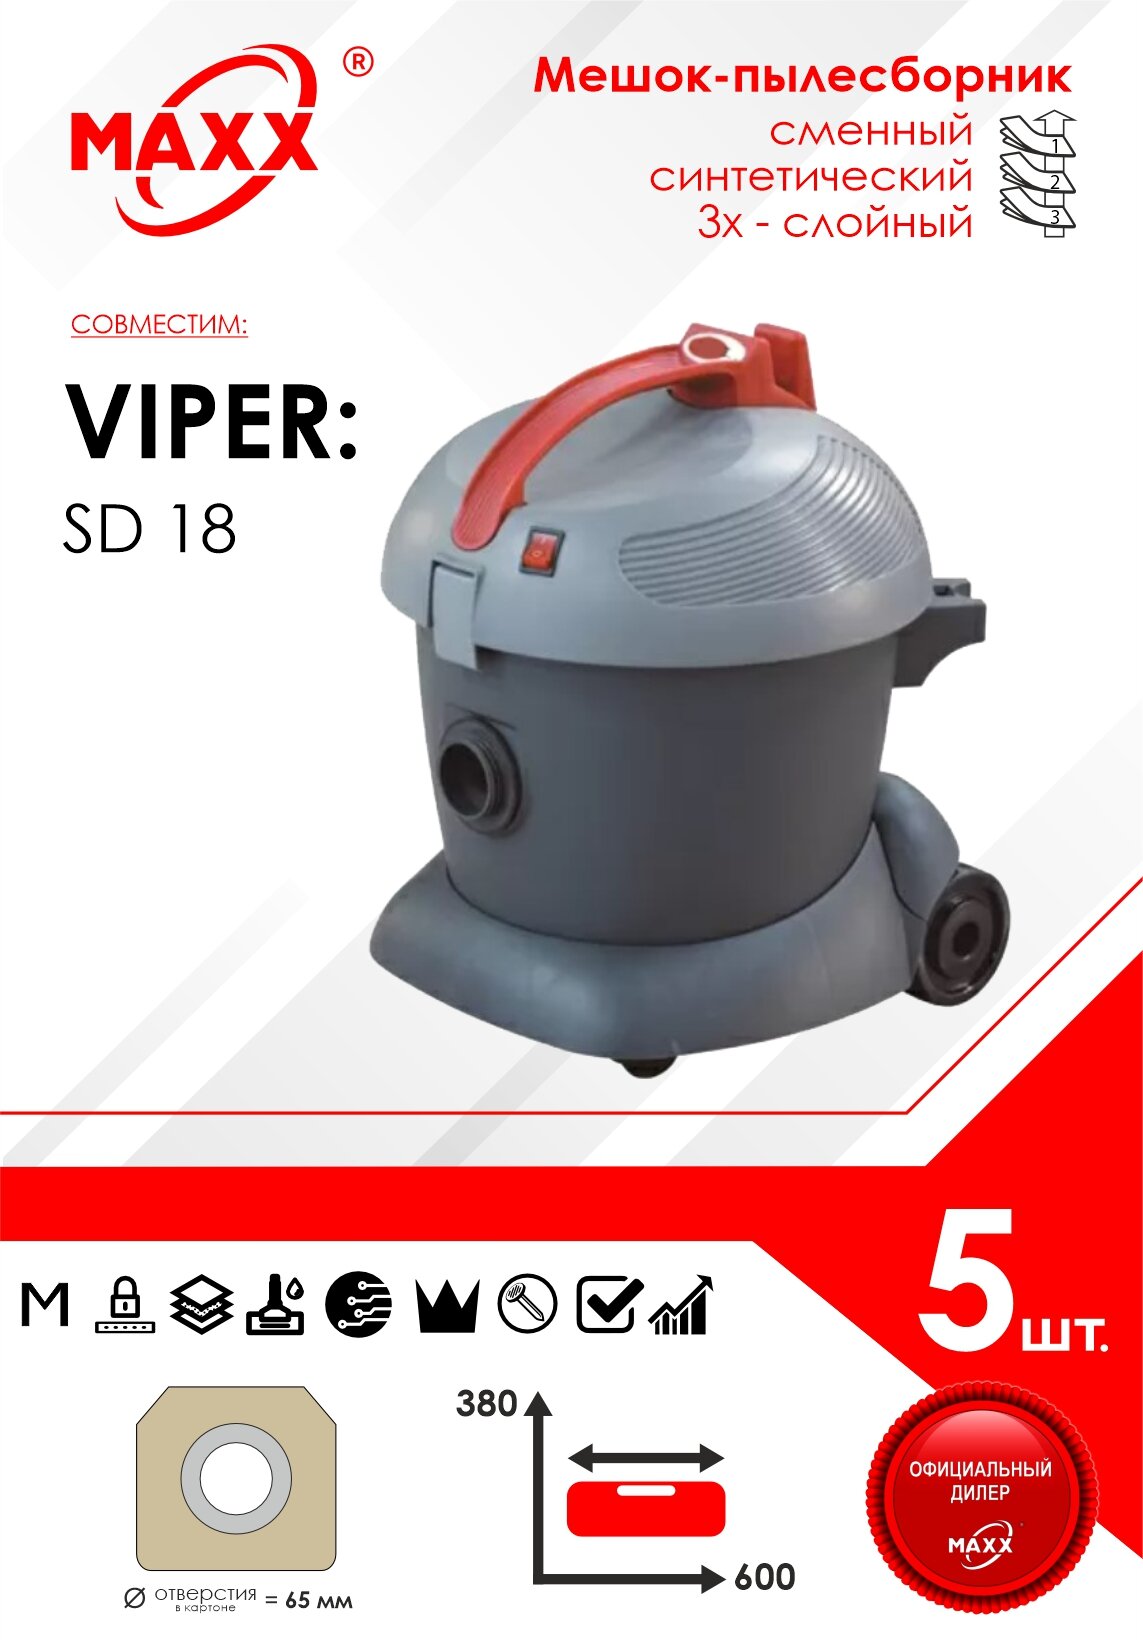 Мешок - пылесборник 5 шт. для пылесоса VIPER SD 18